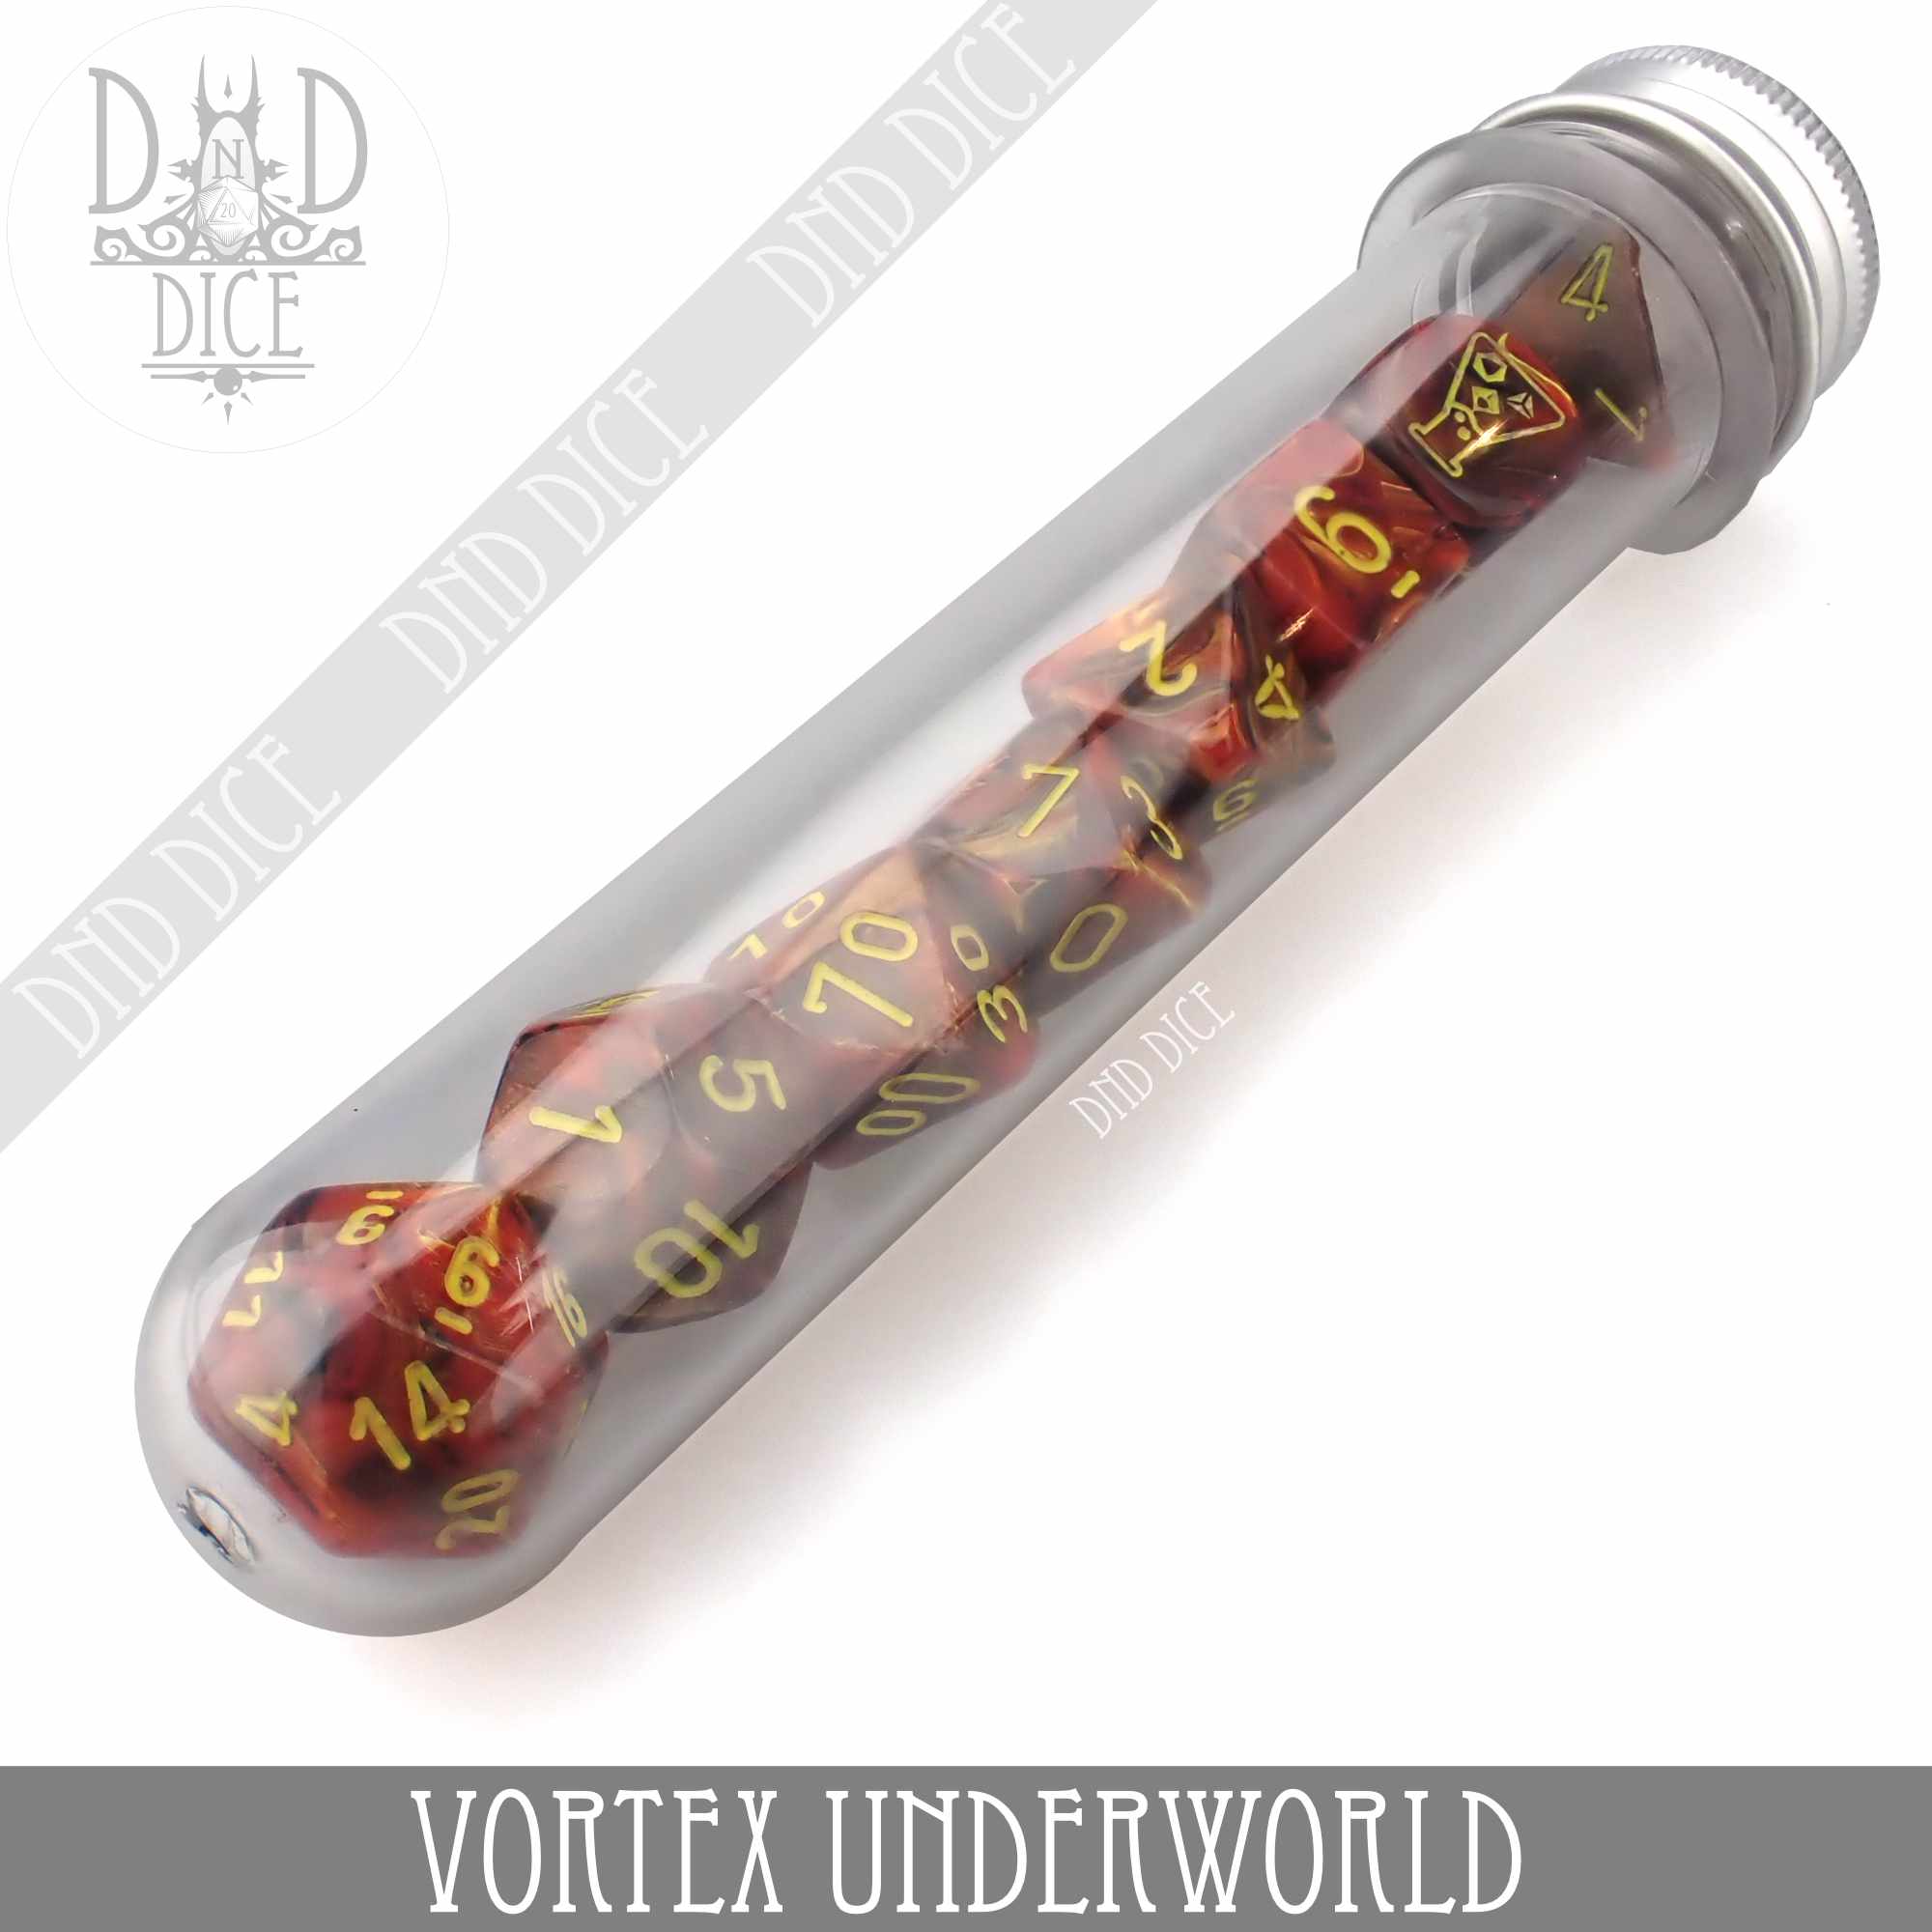 Vortex Underworld 8 Dice Set (Lab 5)